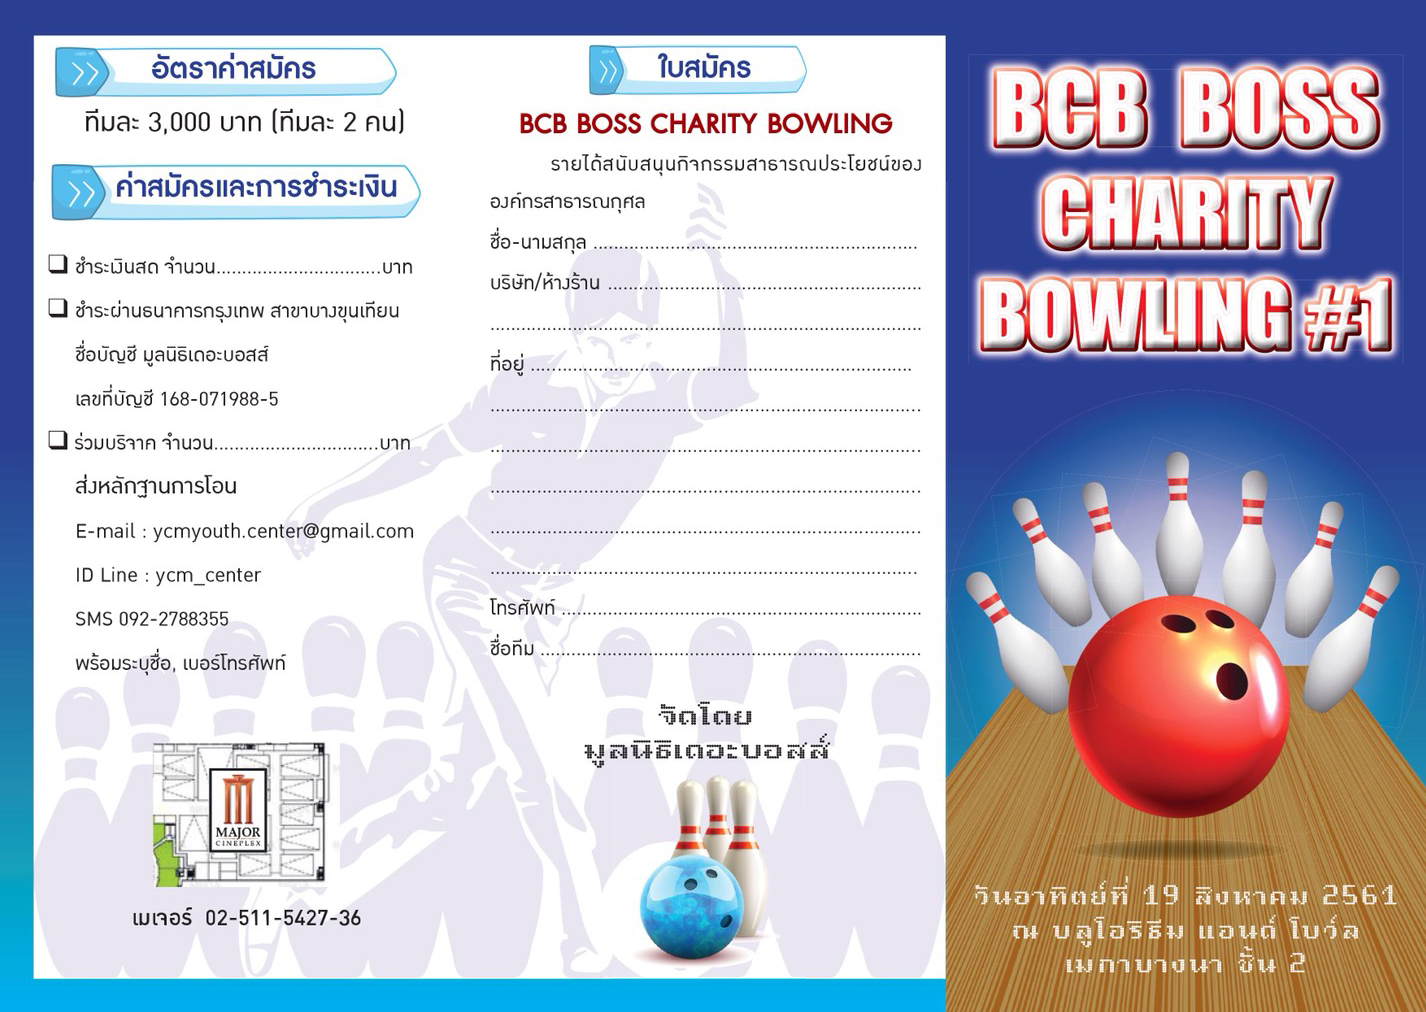 พบการแข่งขันโบว์ลิ่ง การกุศล BCB BOSS Charity Bowling #1